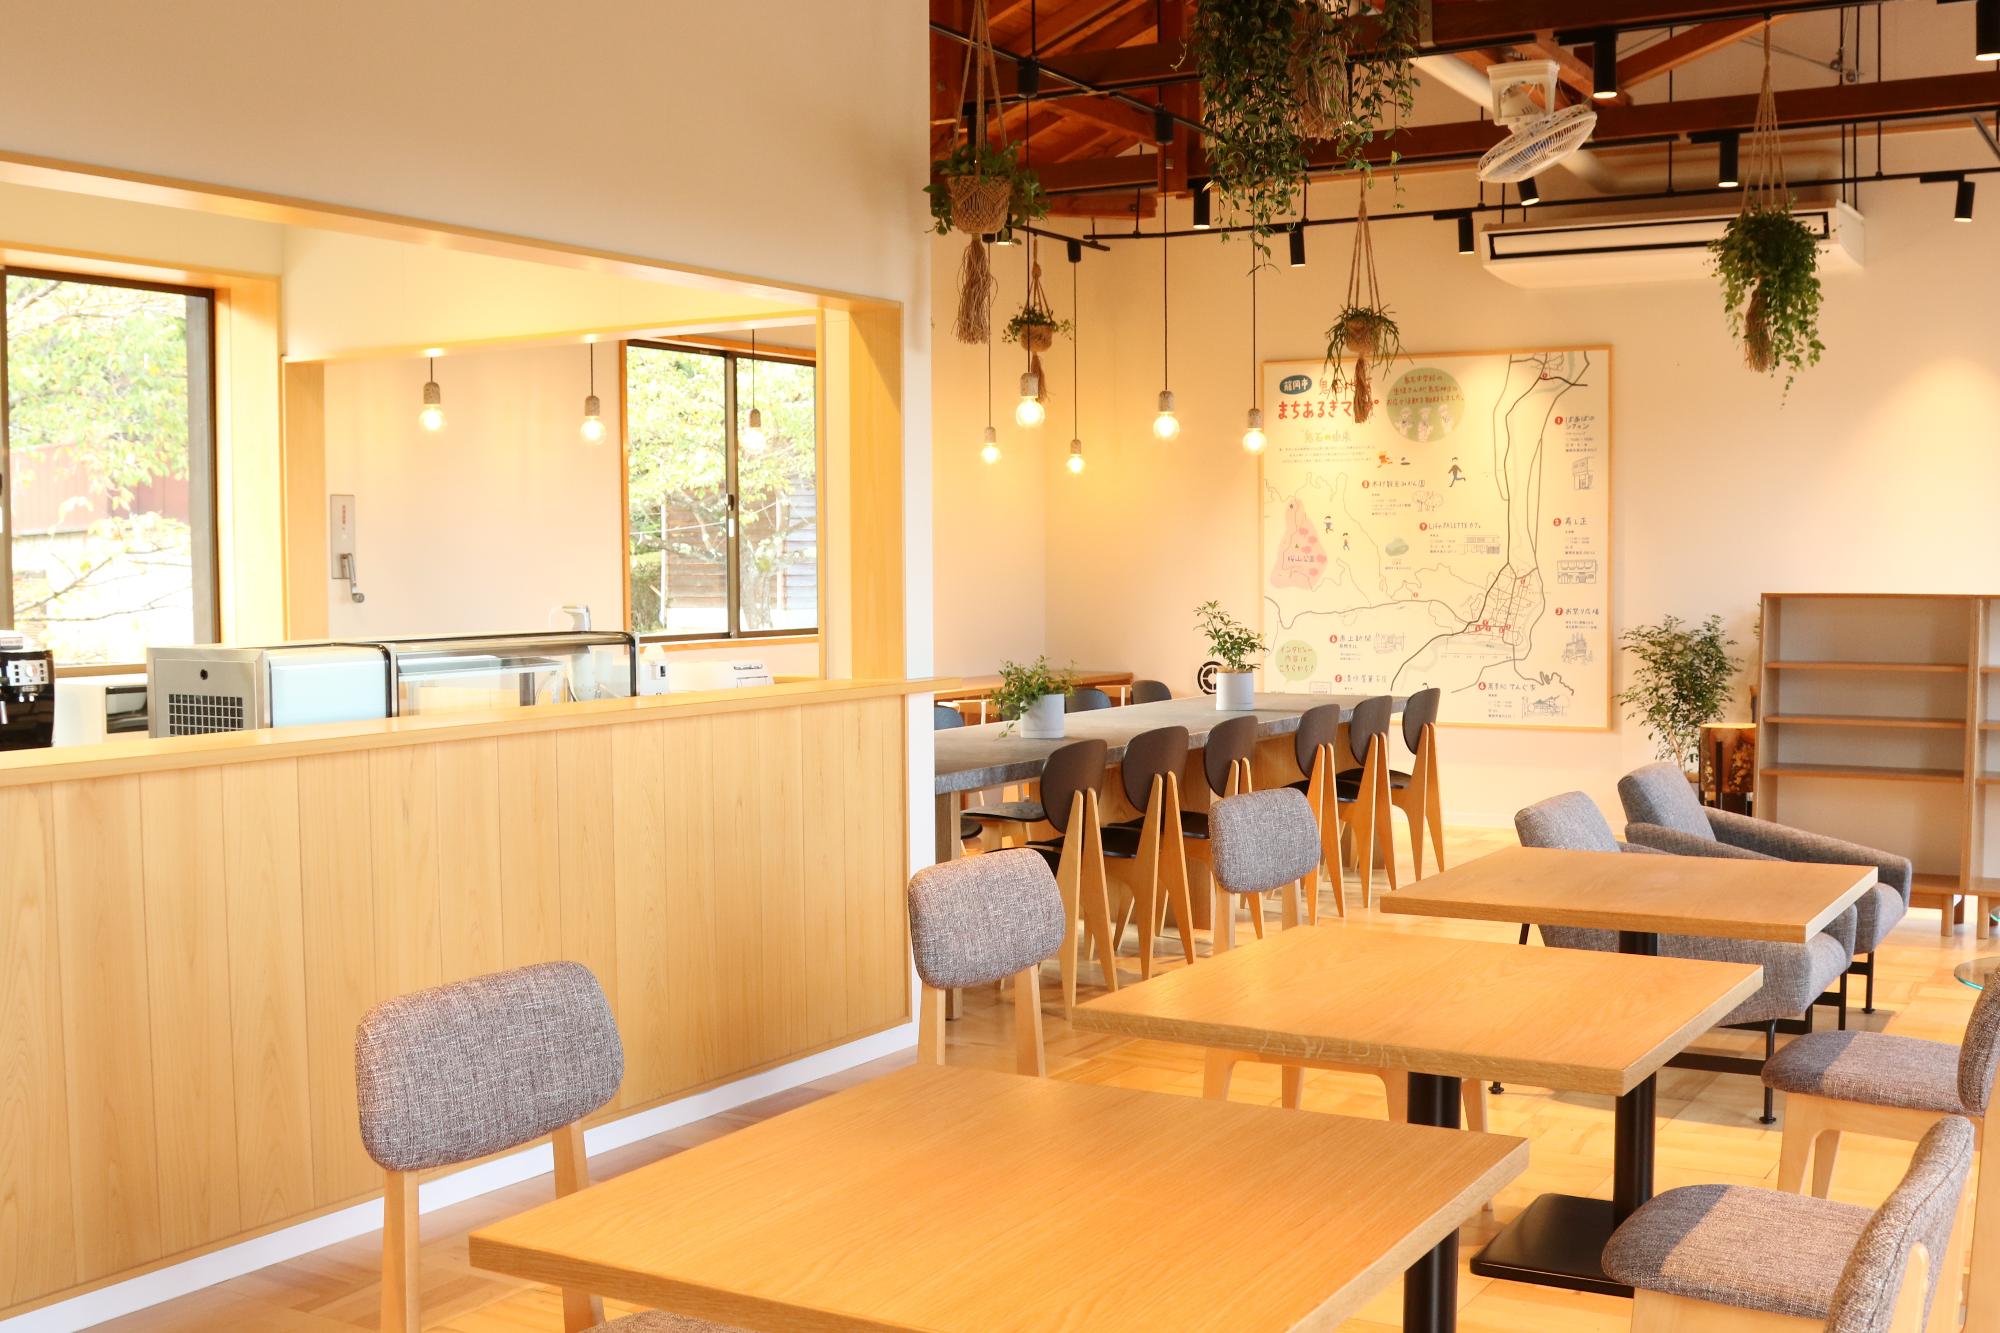 桜山公園みんなのカフェ「しき」の内装